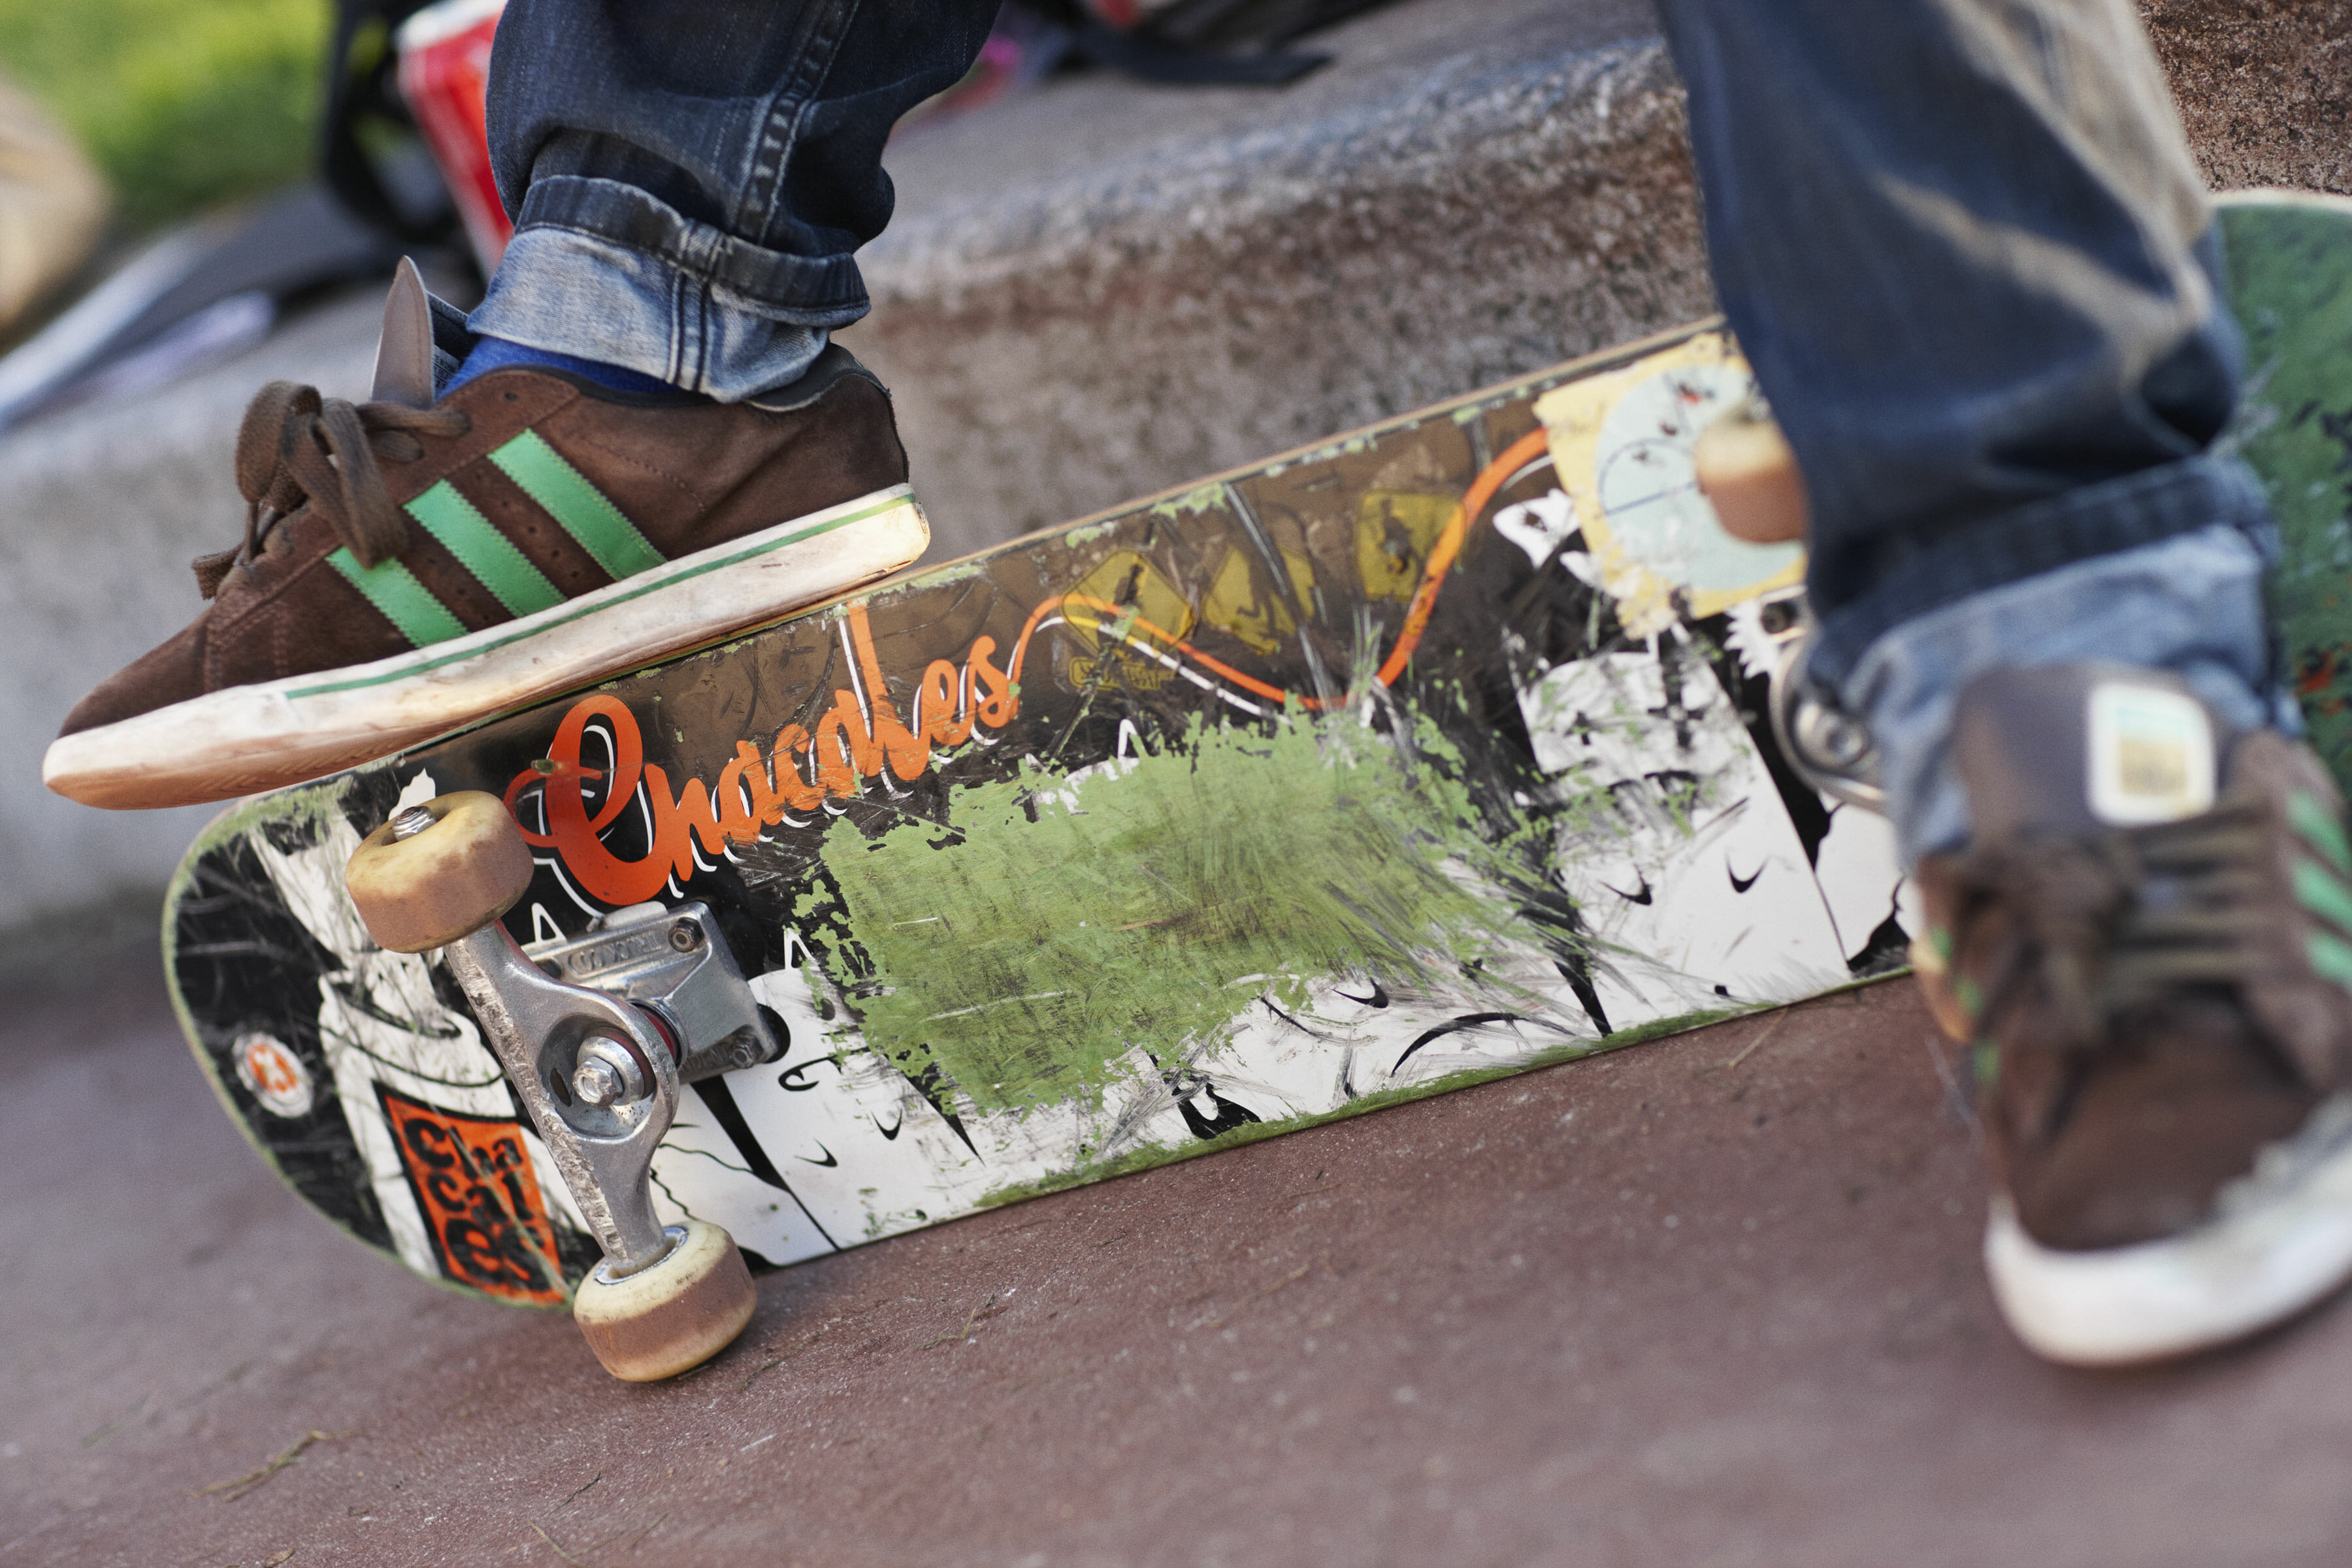 Fotografering til billedbank, skateboard ©fotograf Ida Schmidt